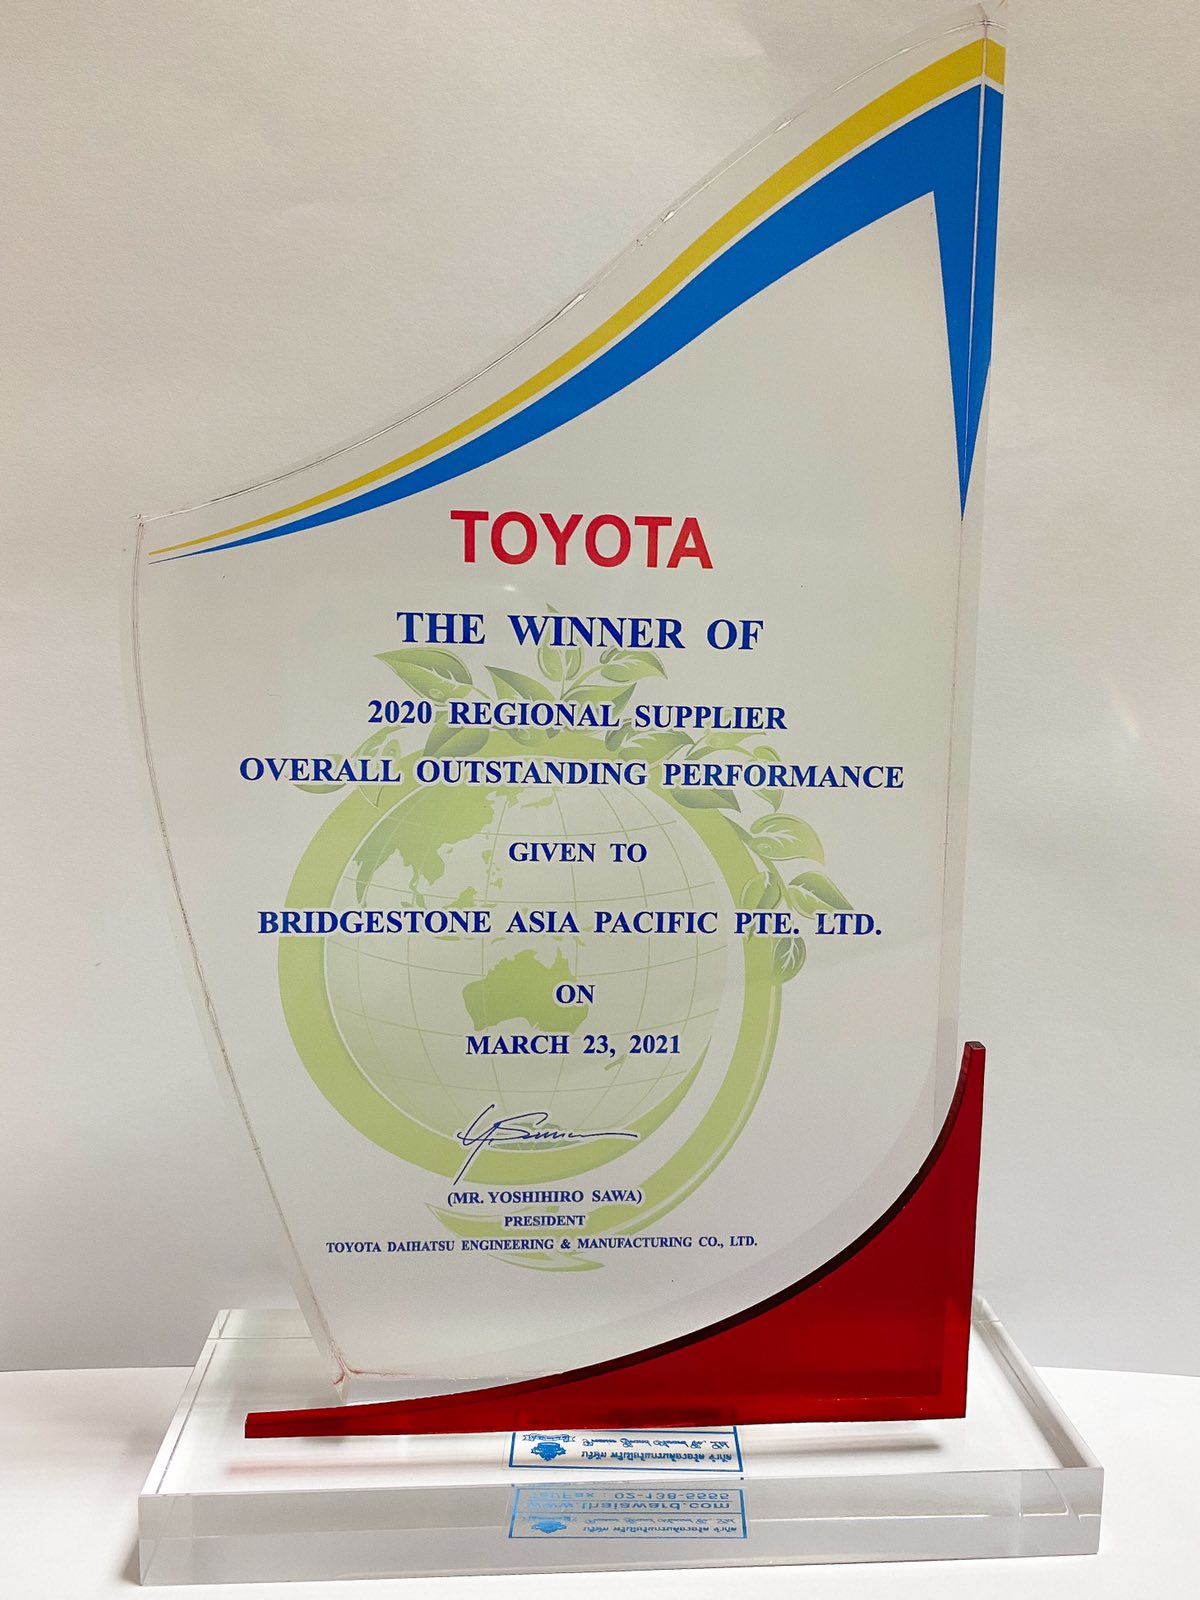 Kỷ niệm chương do Toyota trao tặng cho Bridgestone Châu Á - Thái Bình Dương 